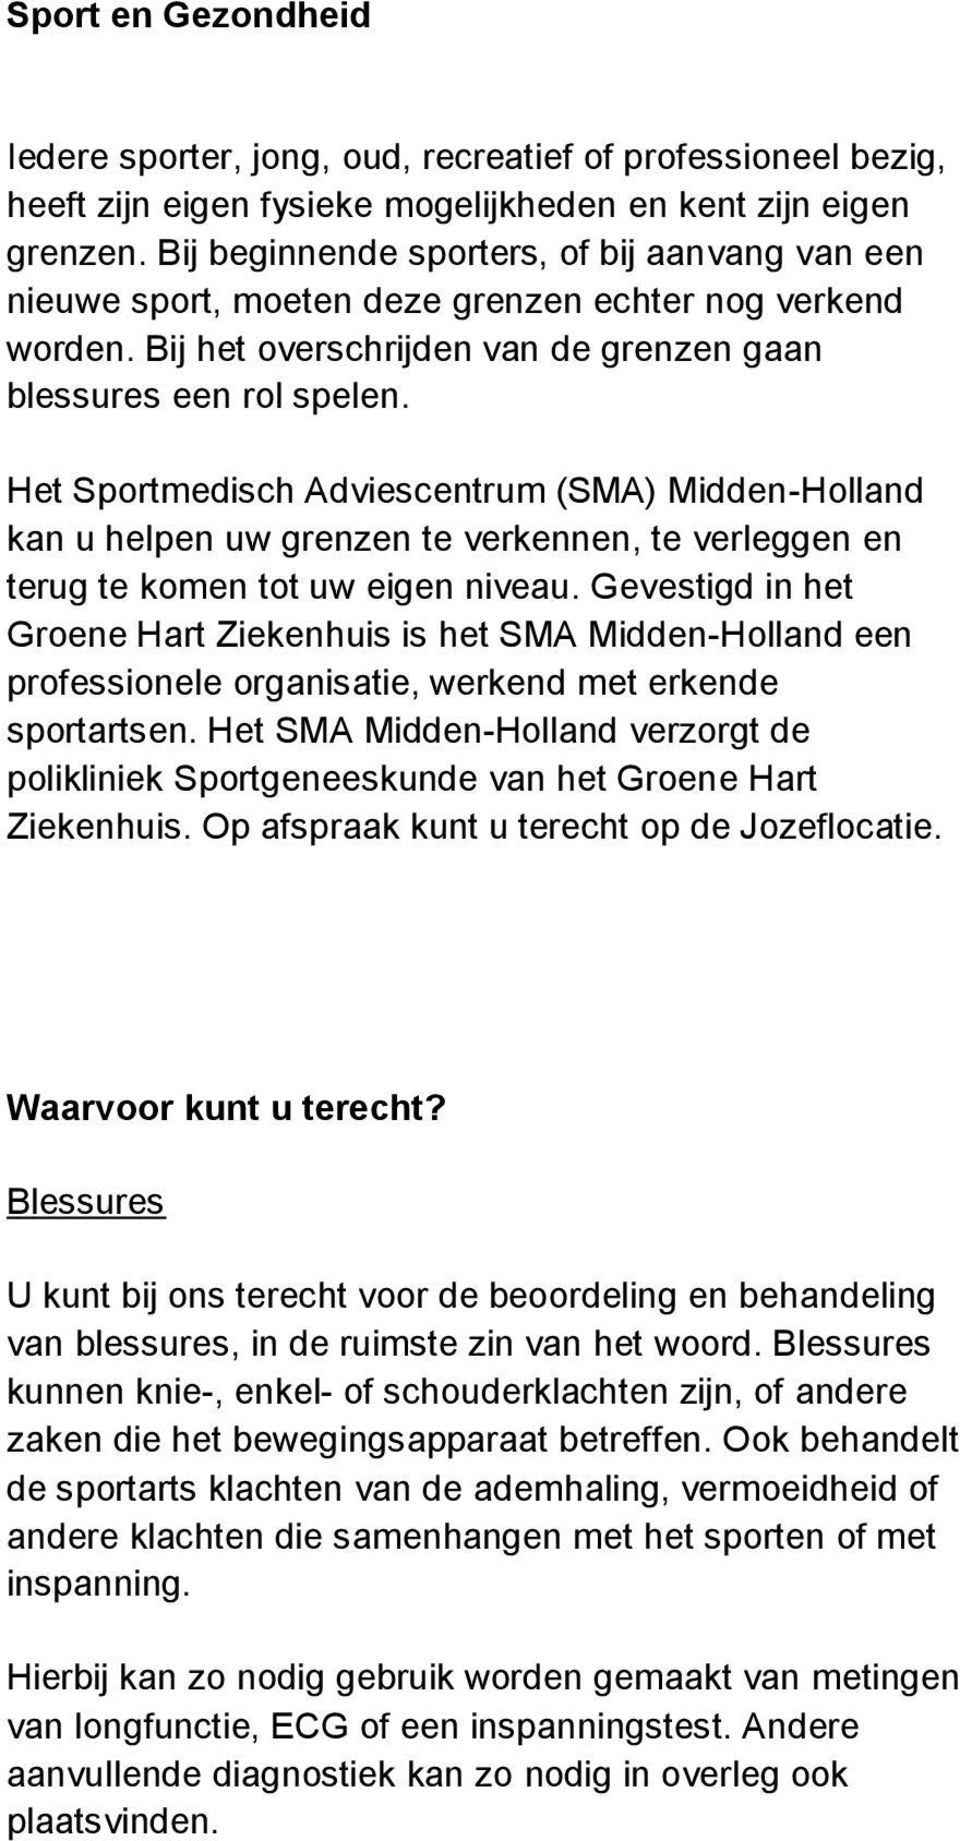 Het Sportmedisch Adviescentrum (SMA) Midden-Holland kan u helpen uw grenzen te verkennen, te verleggen en terug te komen tot uw eigen niveau.